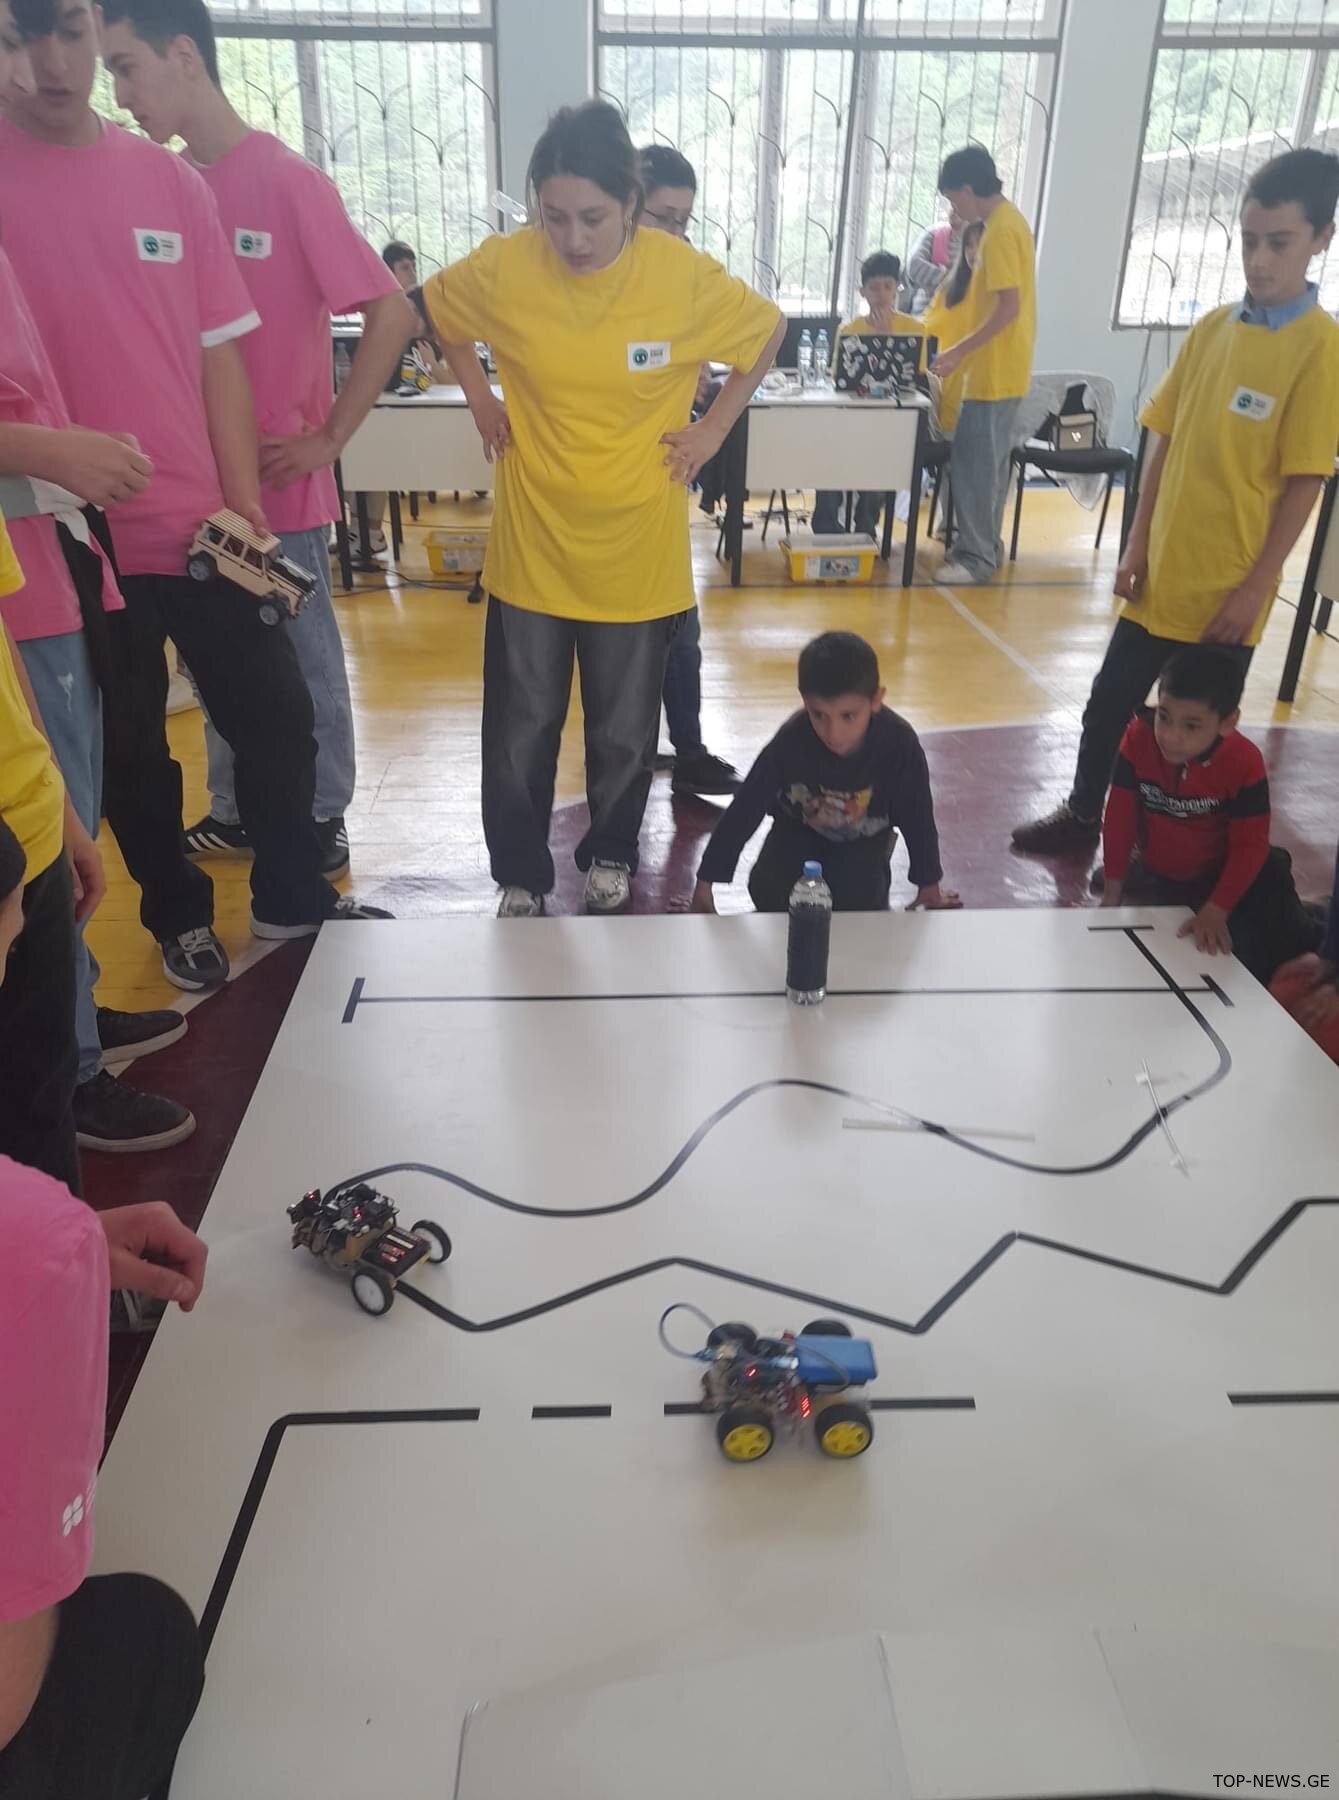 ჭიათურაში, პირველად საქართველოში, მოსწავლეებს შორის რობოტიკის ეროვნული ჩემპიონატი გაიმართა